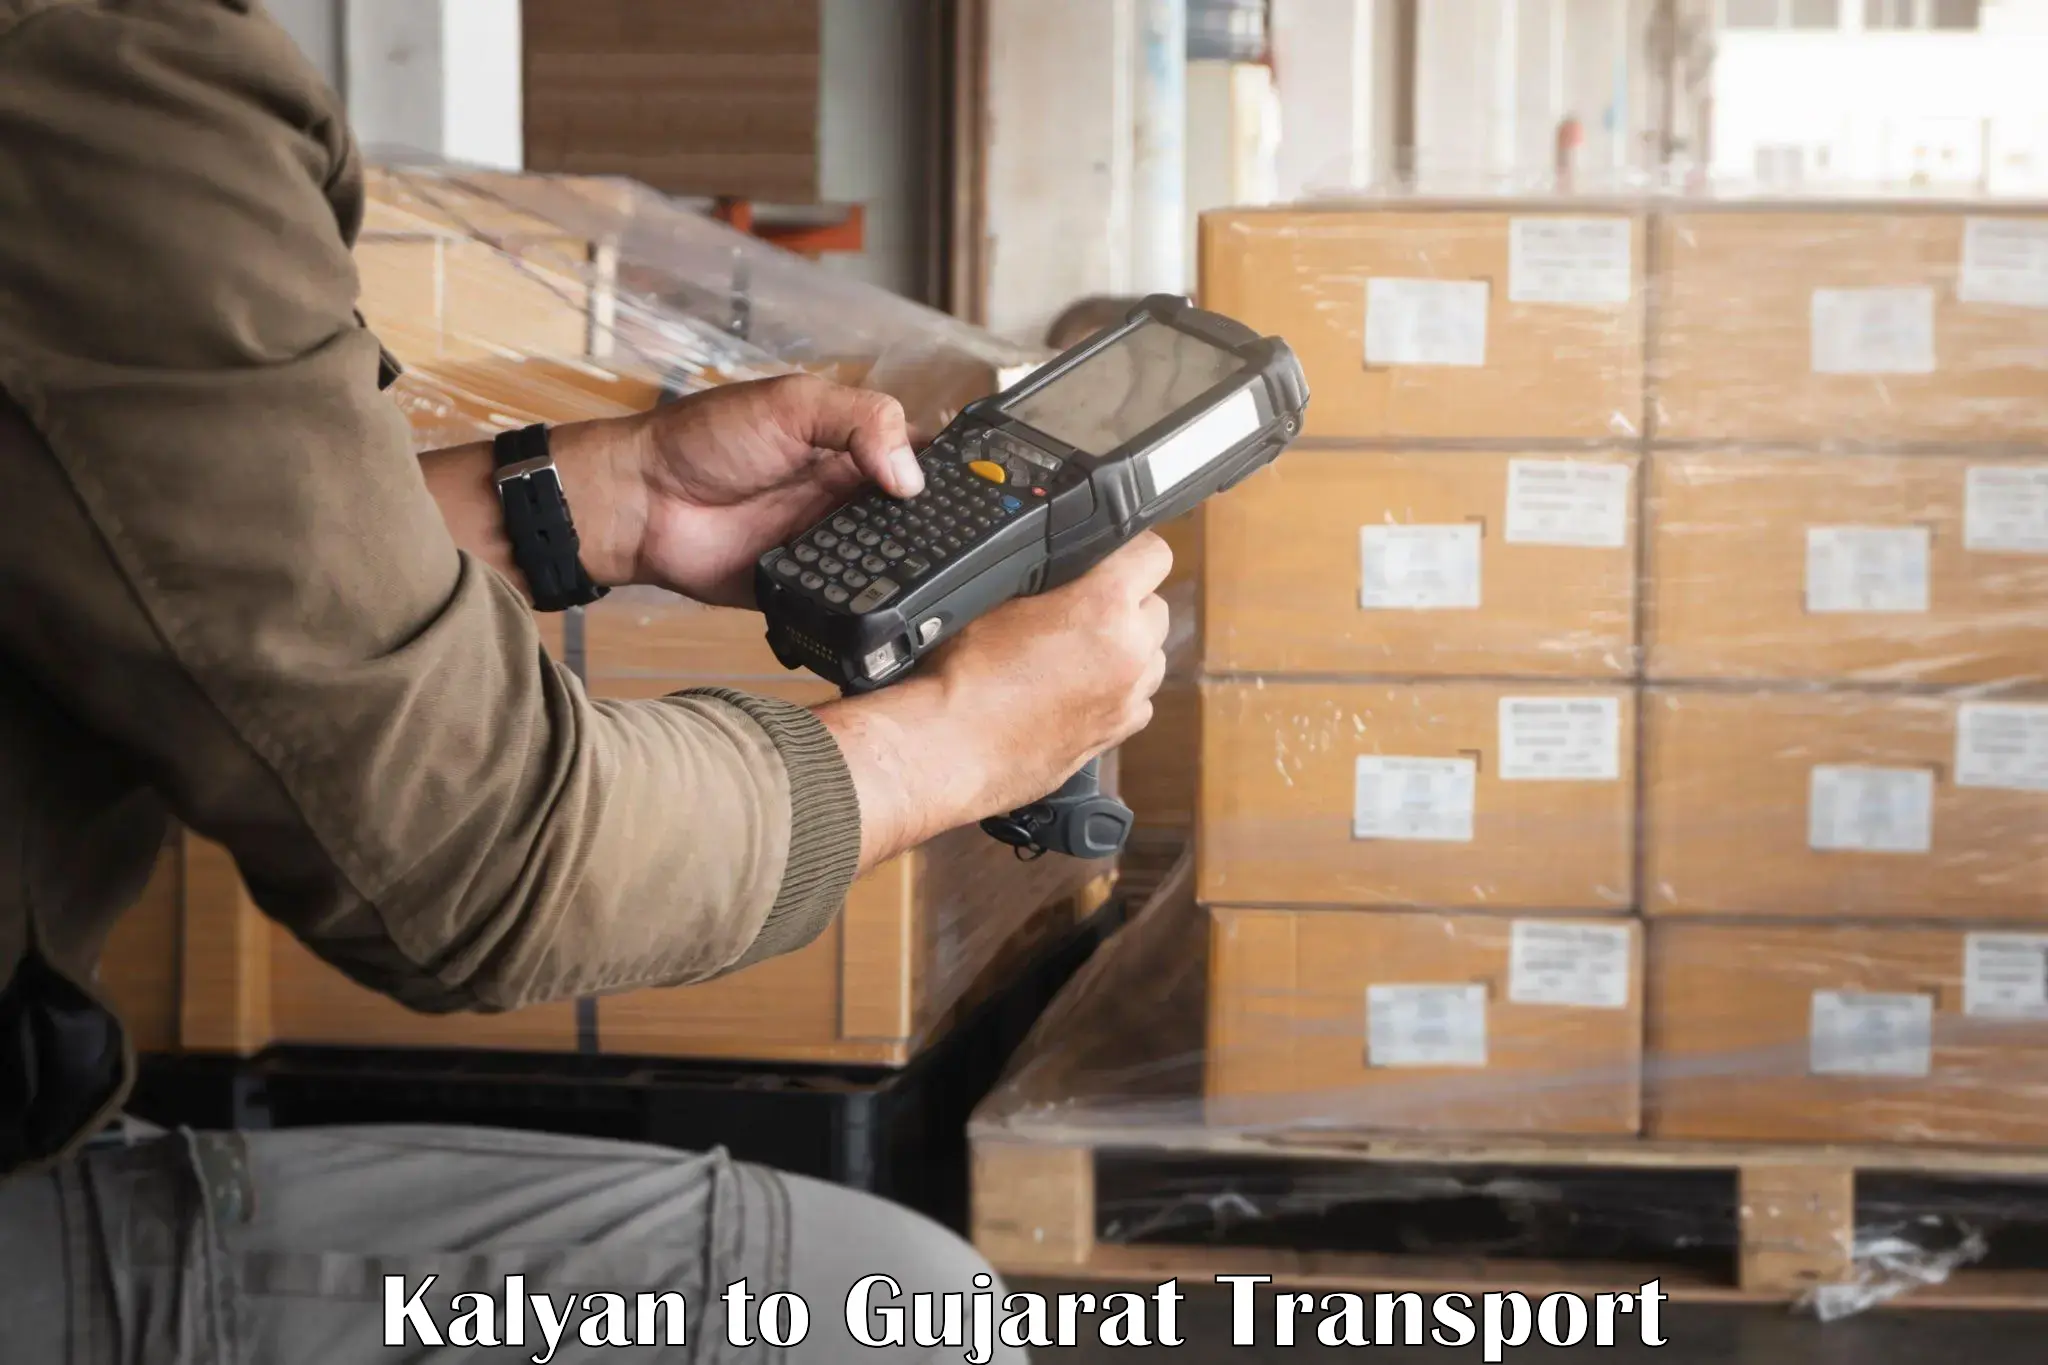 Express transport services Kalyan to NIT Surat